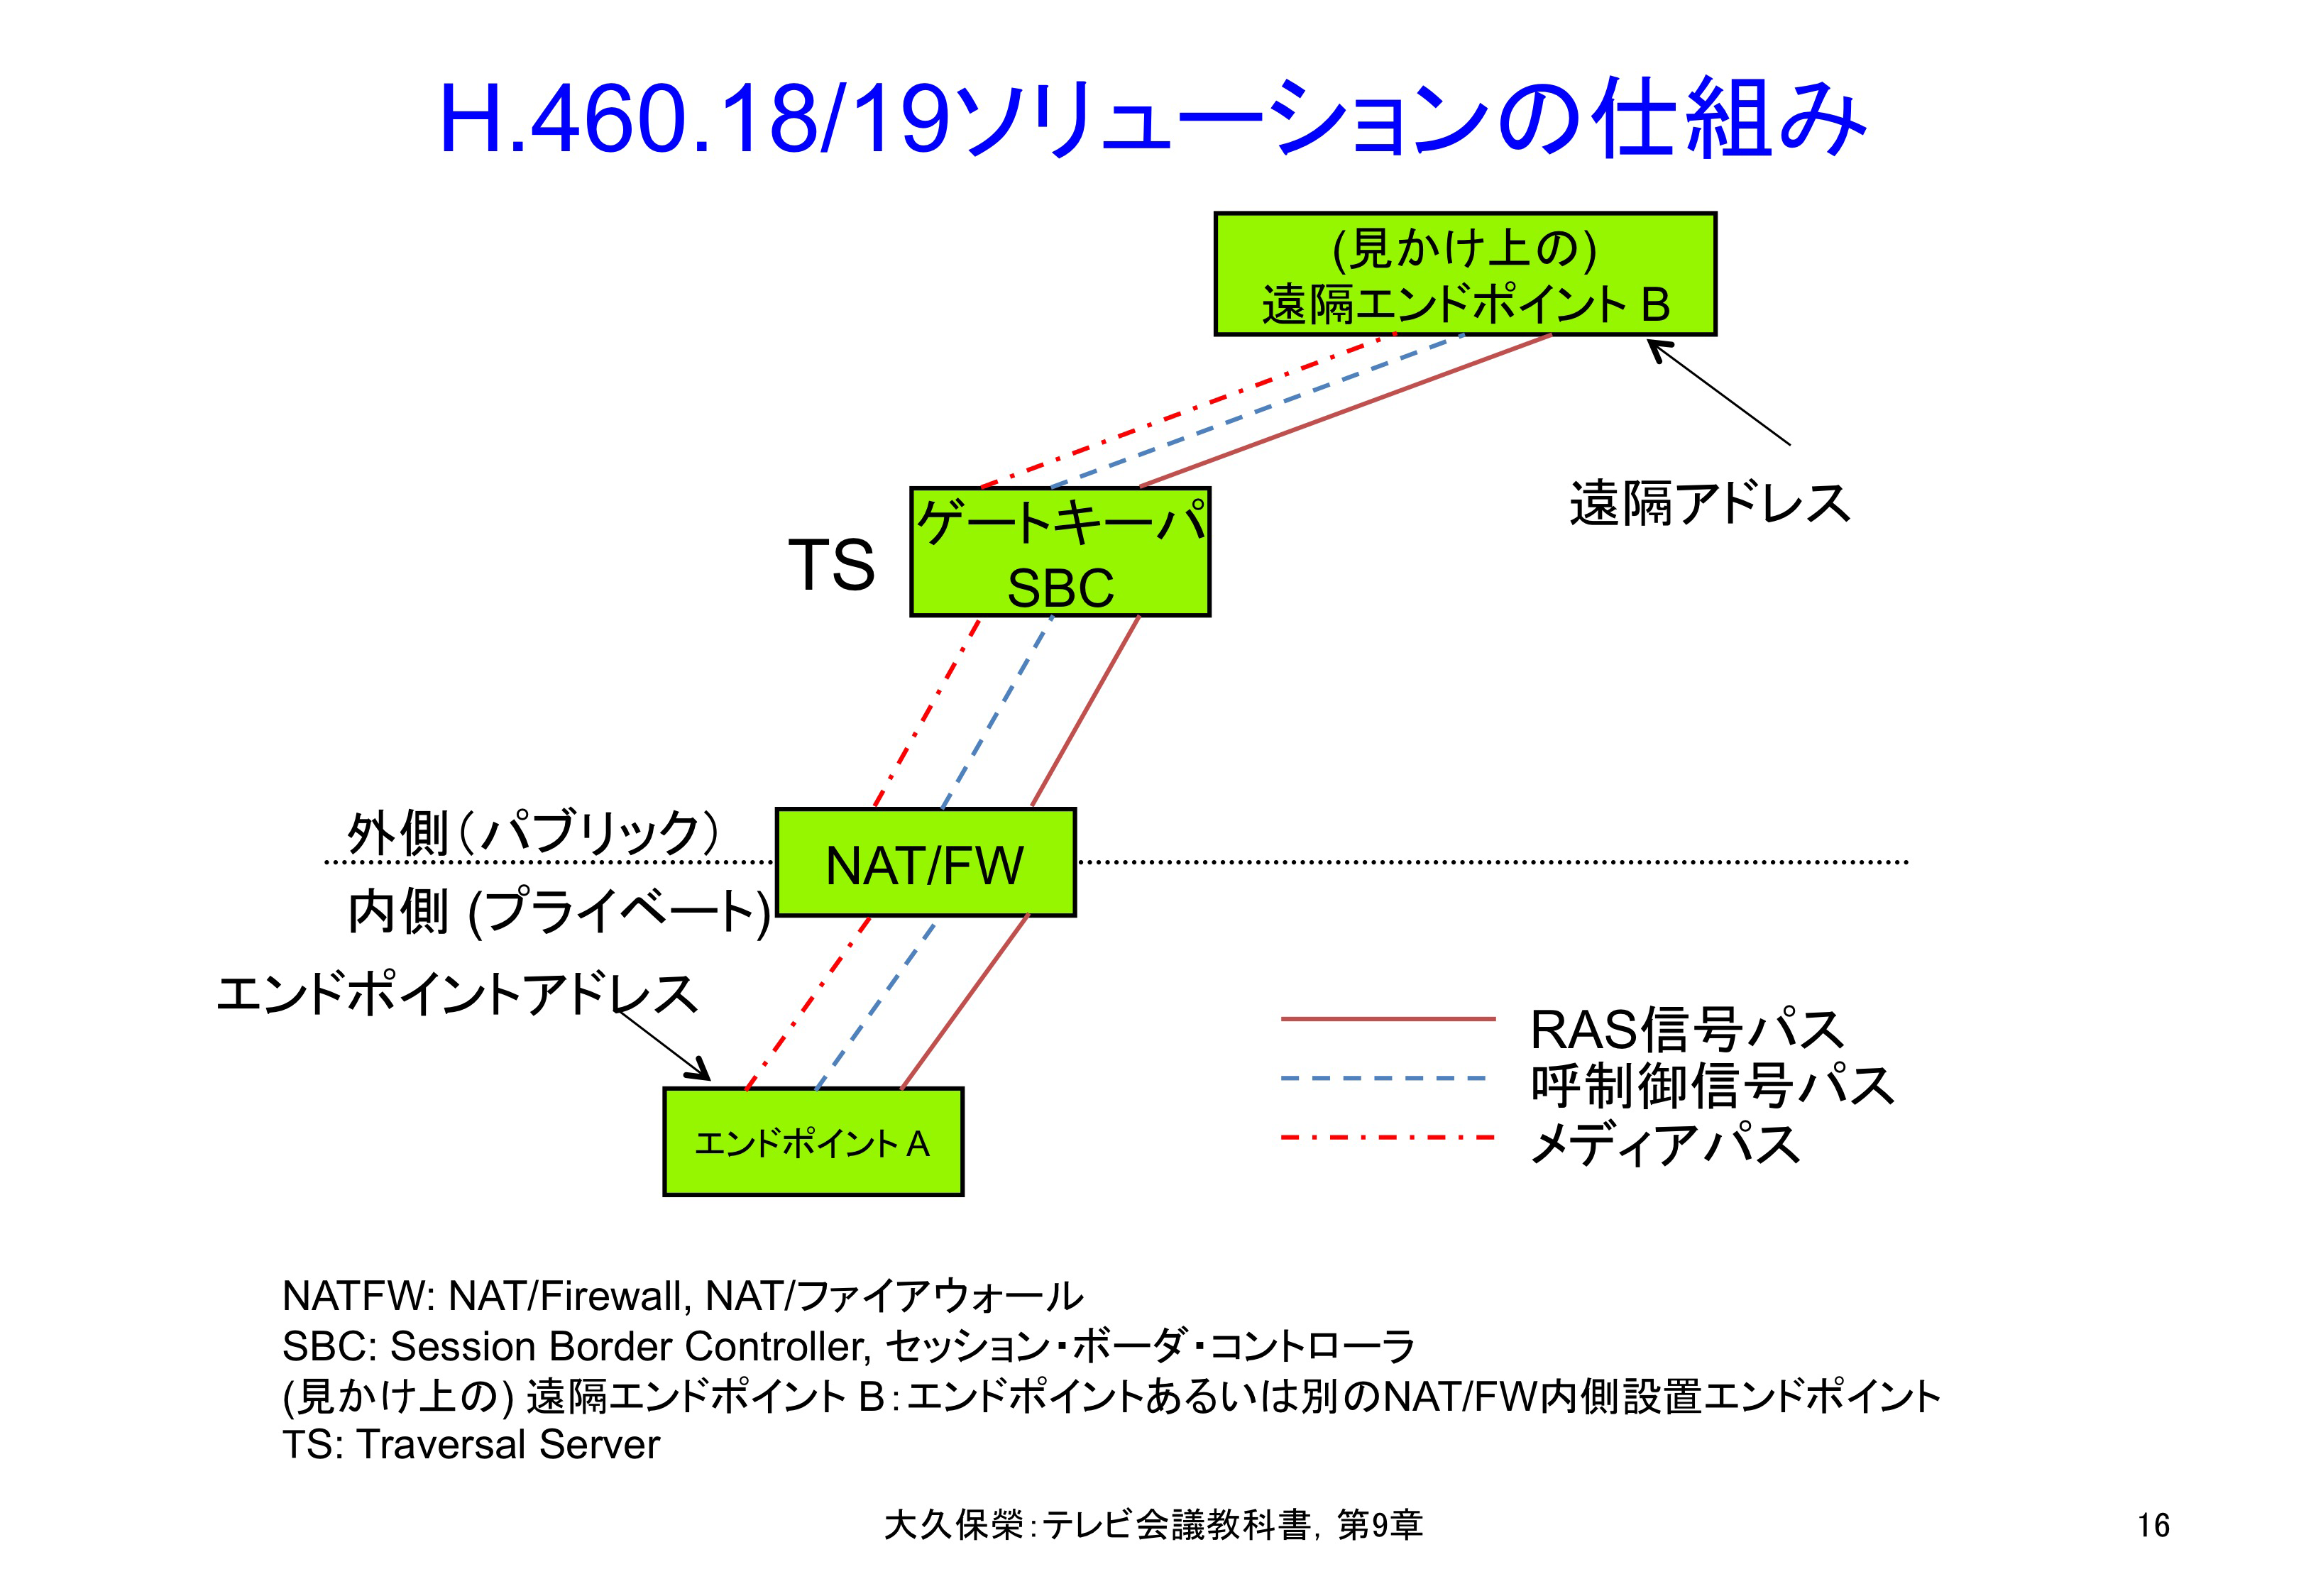 図9-16 H.460.18/19ソリューションの仕組み